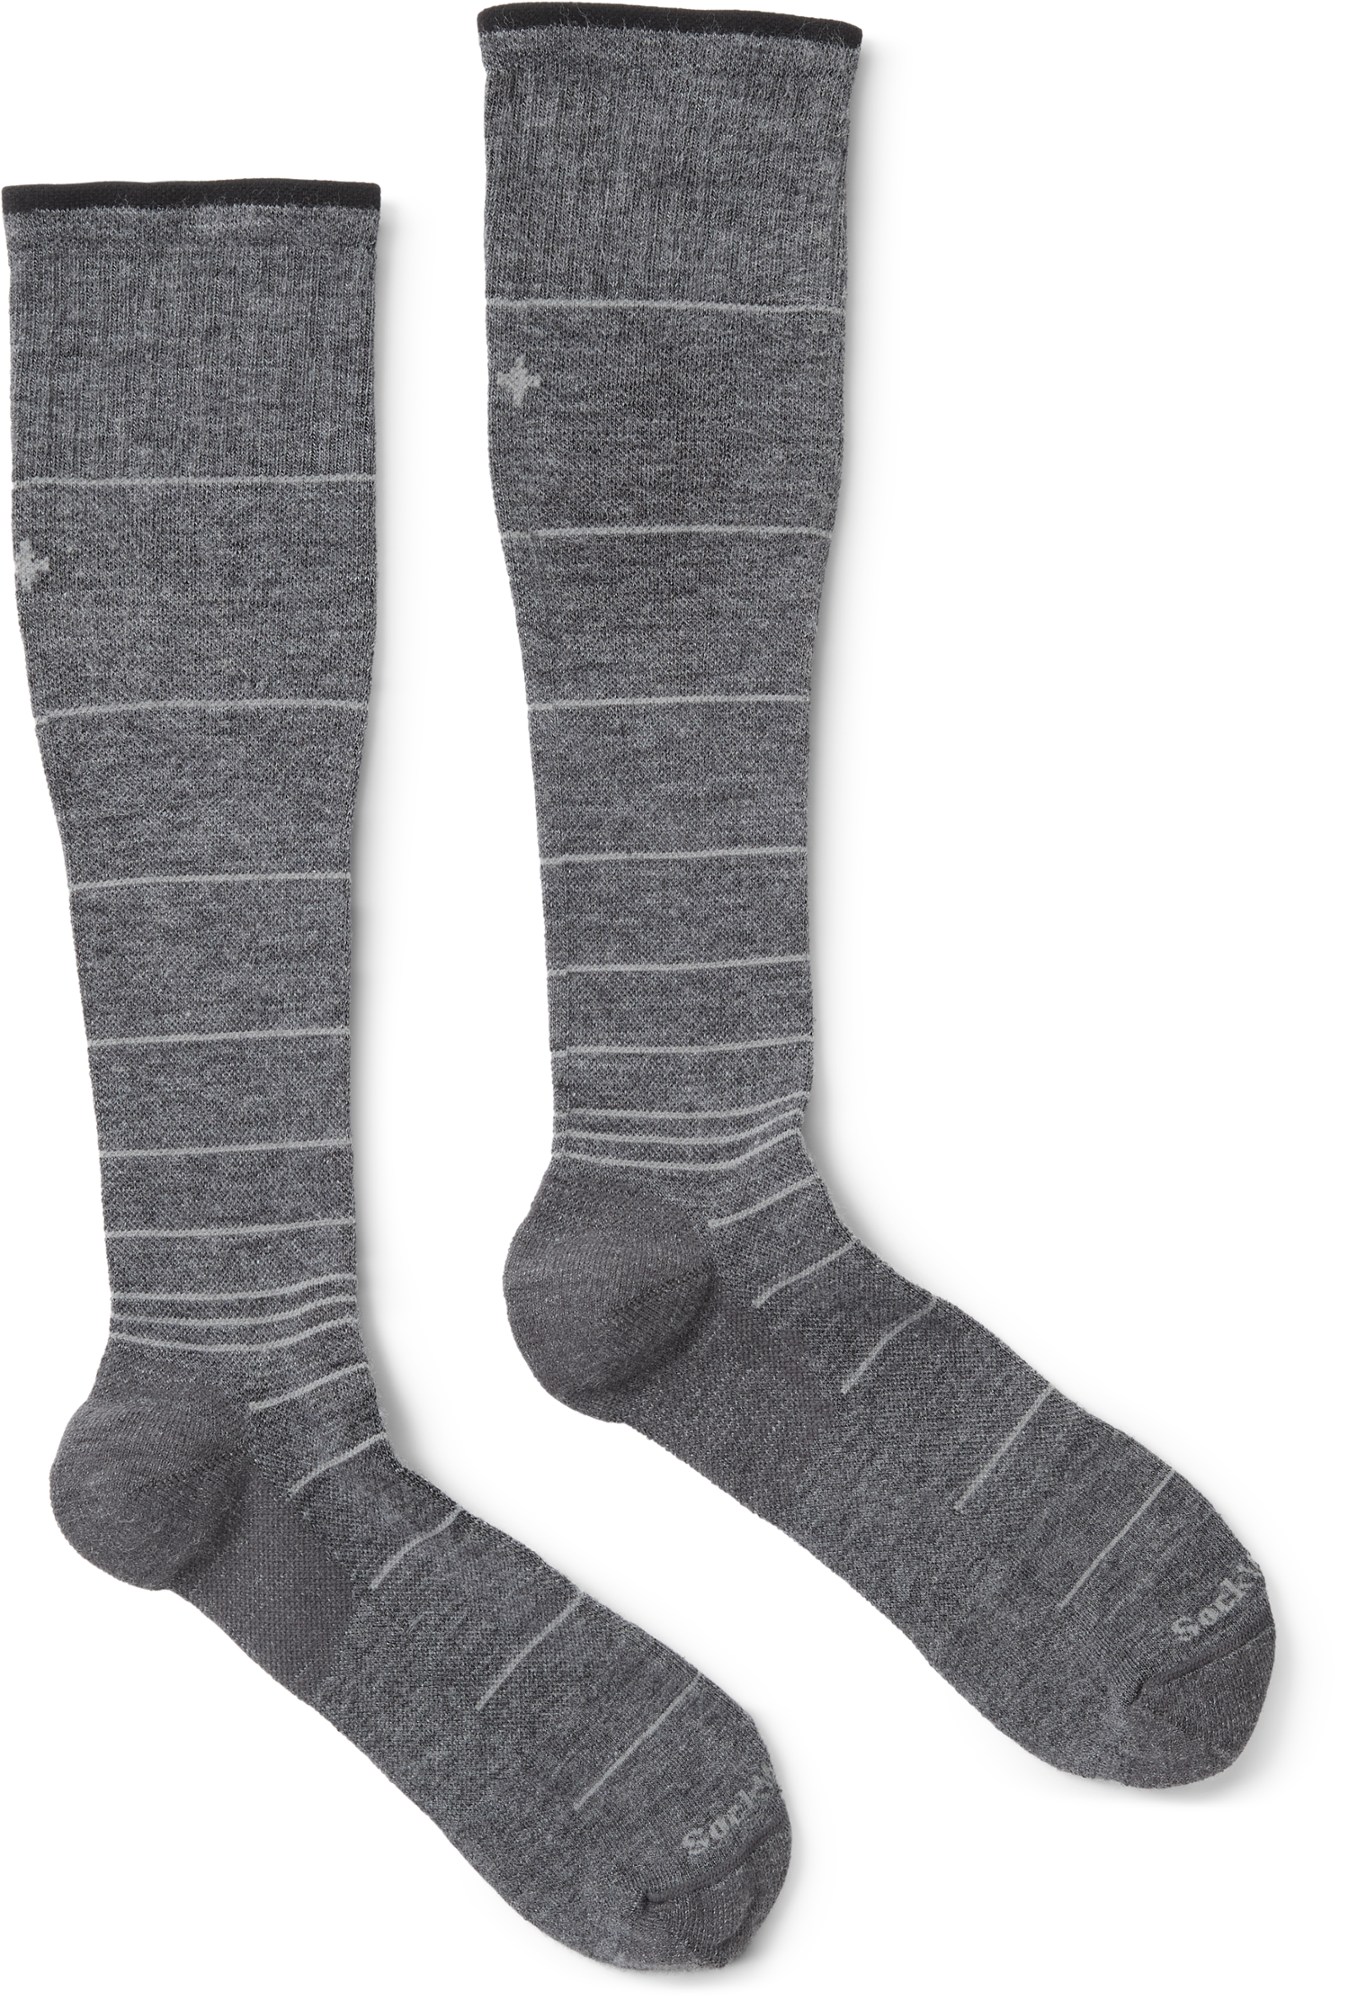 Компрессионные носки Circulator — мужские Sockwell, серый фабричные компрессионные носки компрессионные носки оптовая продажа компрессионные носки компрессионные носки